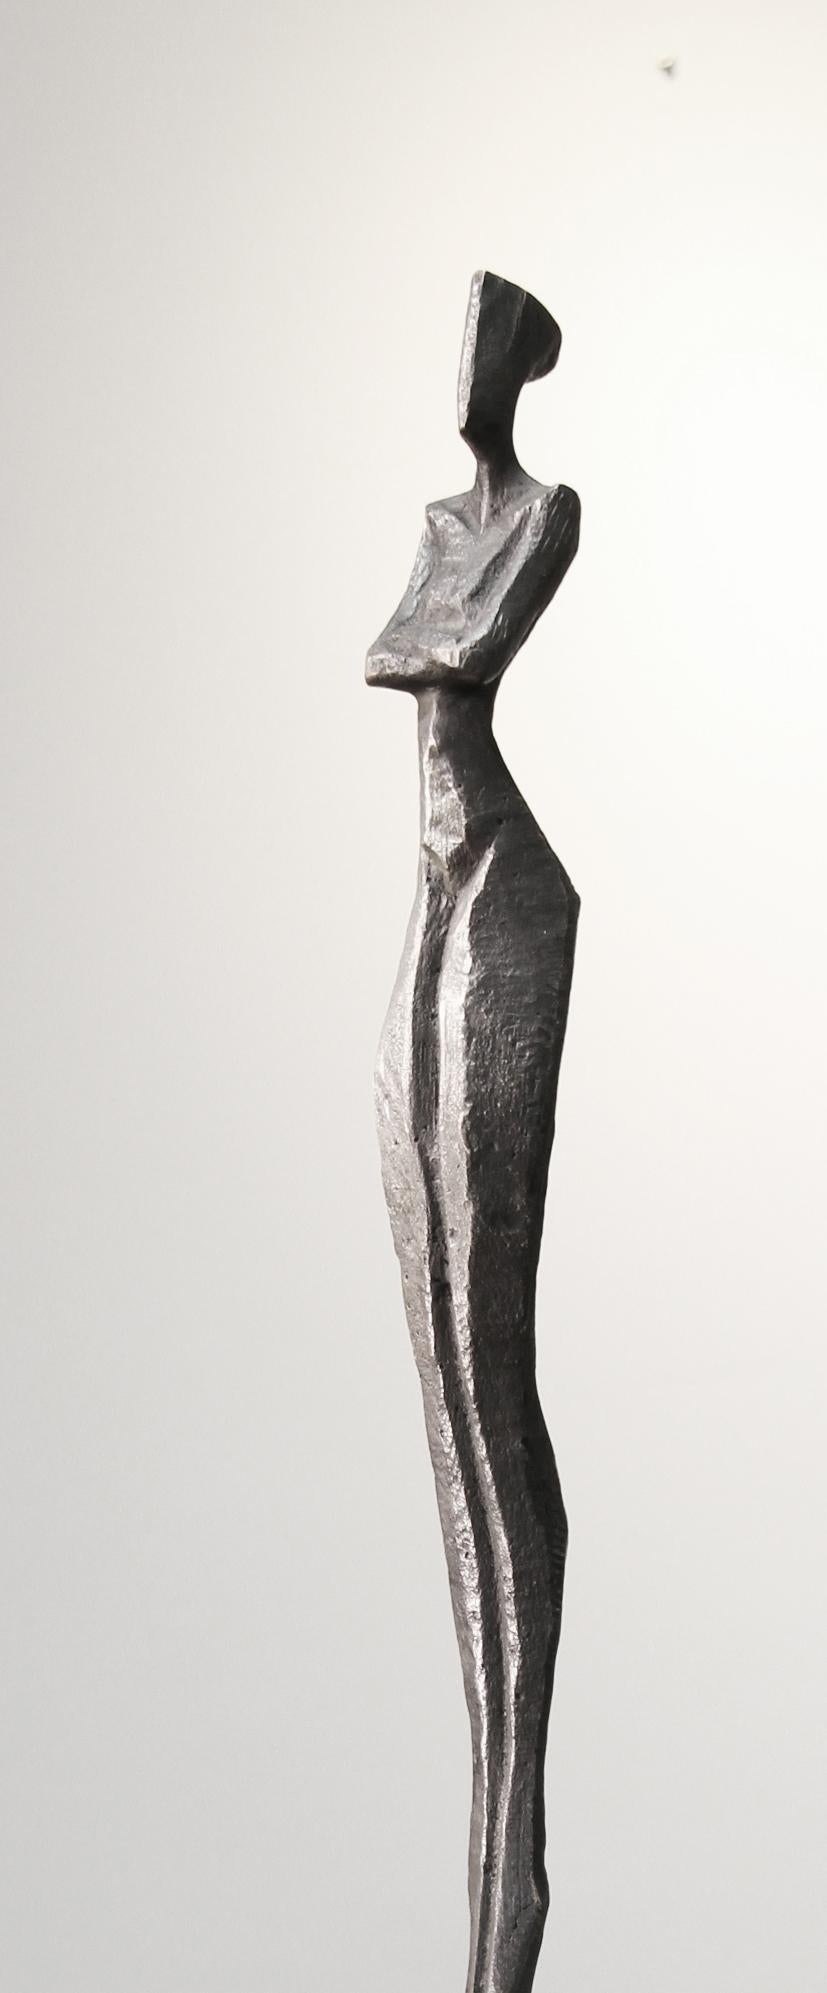 Marlene III ist eine hohe, elegante Bronzeskulptur einer menschlichen Figur.  

Nando Kallweit ist ein deutscher Bildhauer, der in Bronze und Eiche arbeitet.  Kallweit schnitzt das Originalstück mit der Kettensäge aus einem Stück Eiche.  Mit dem